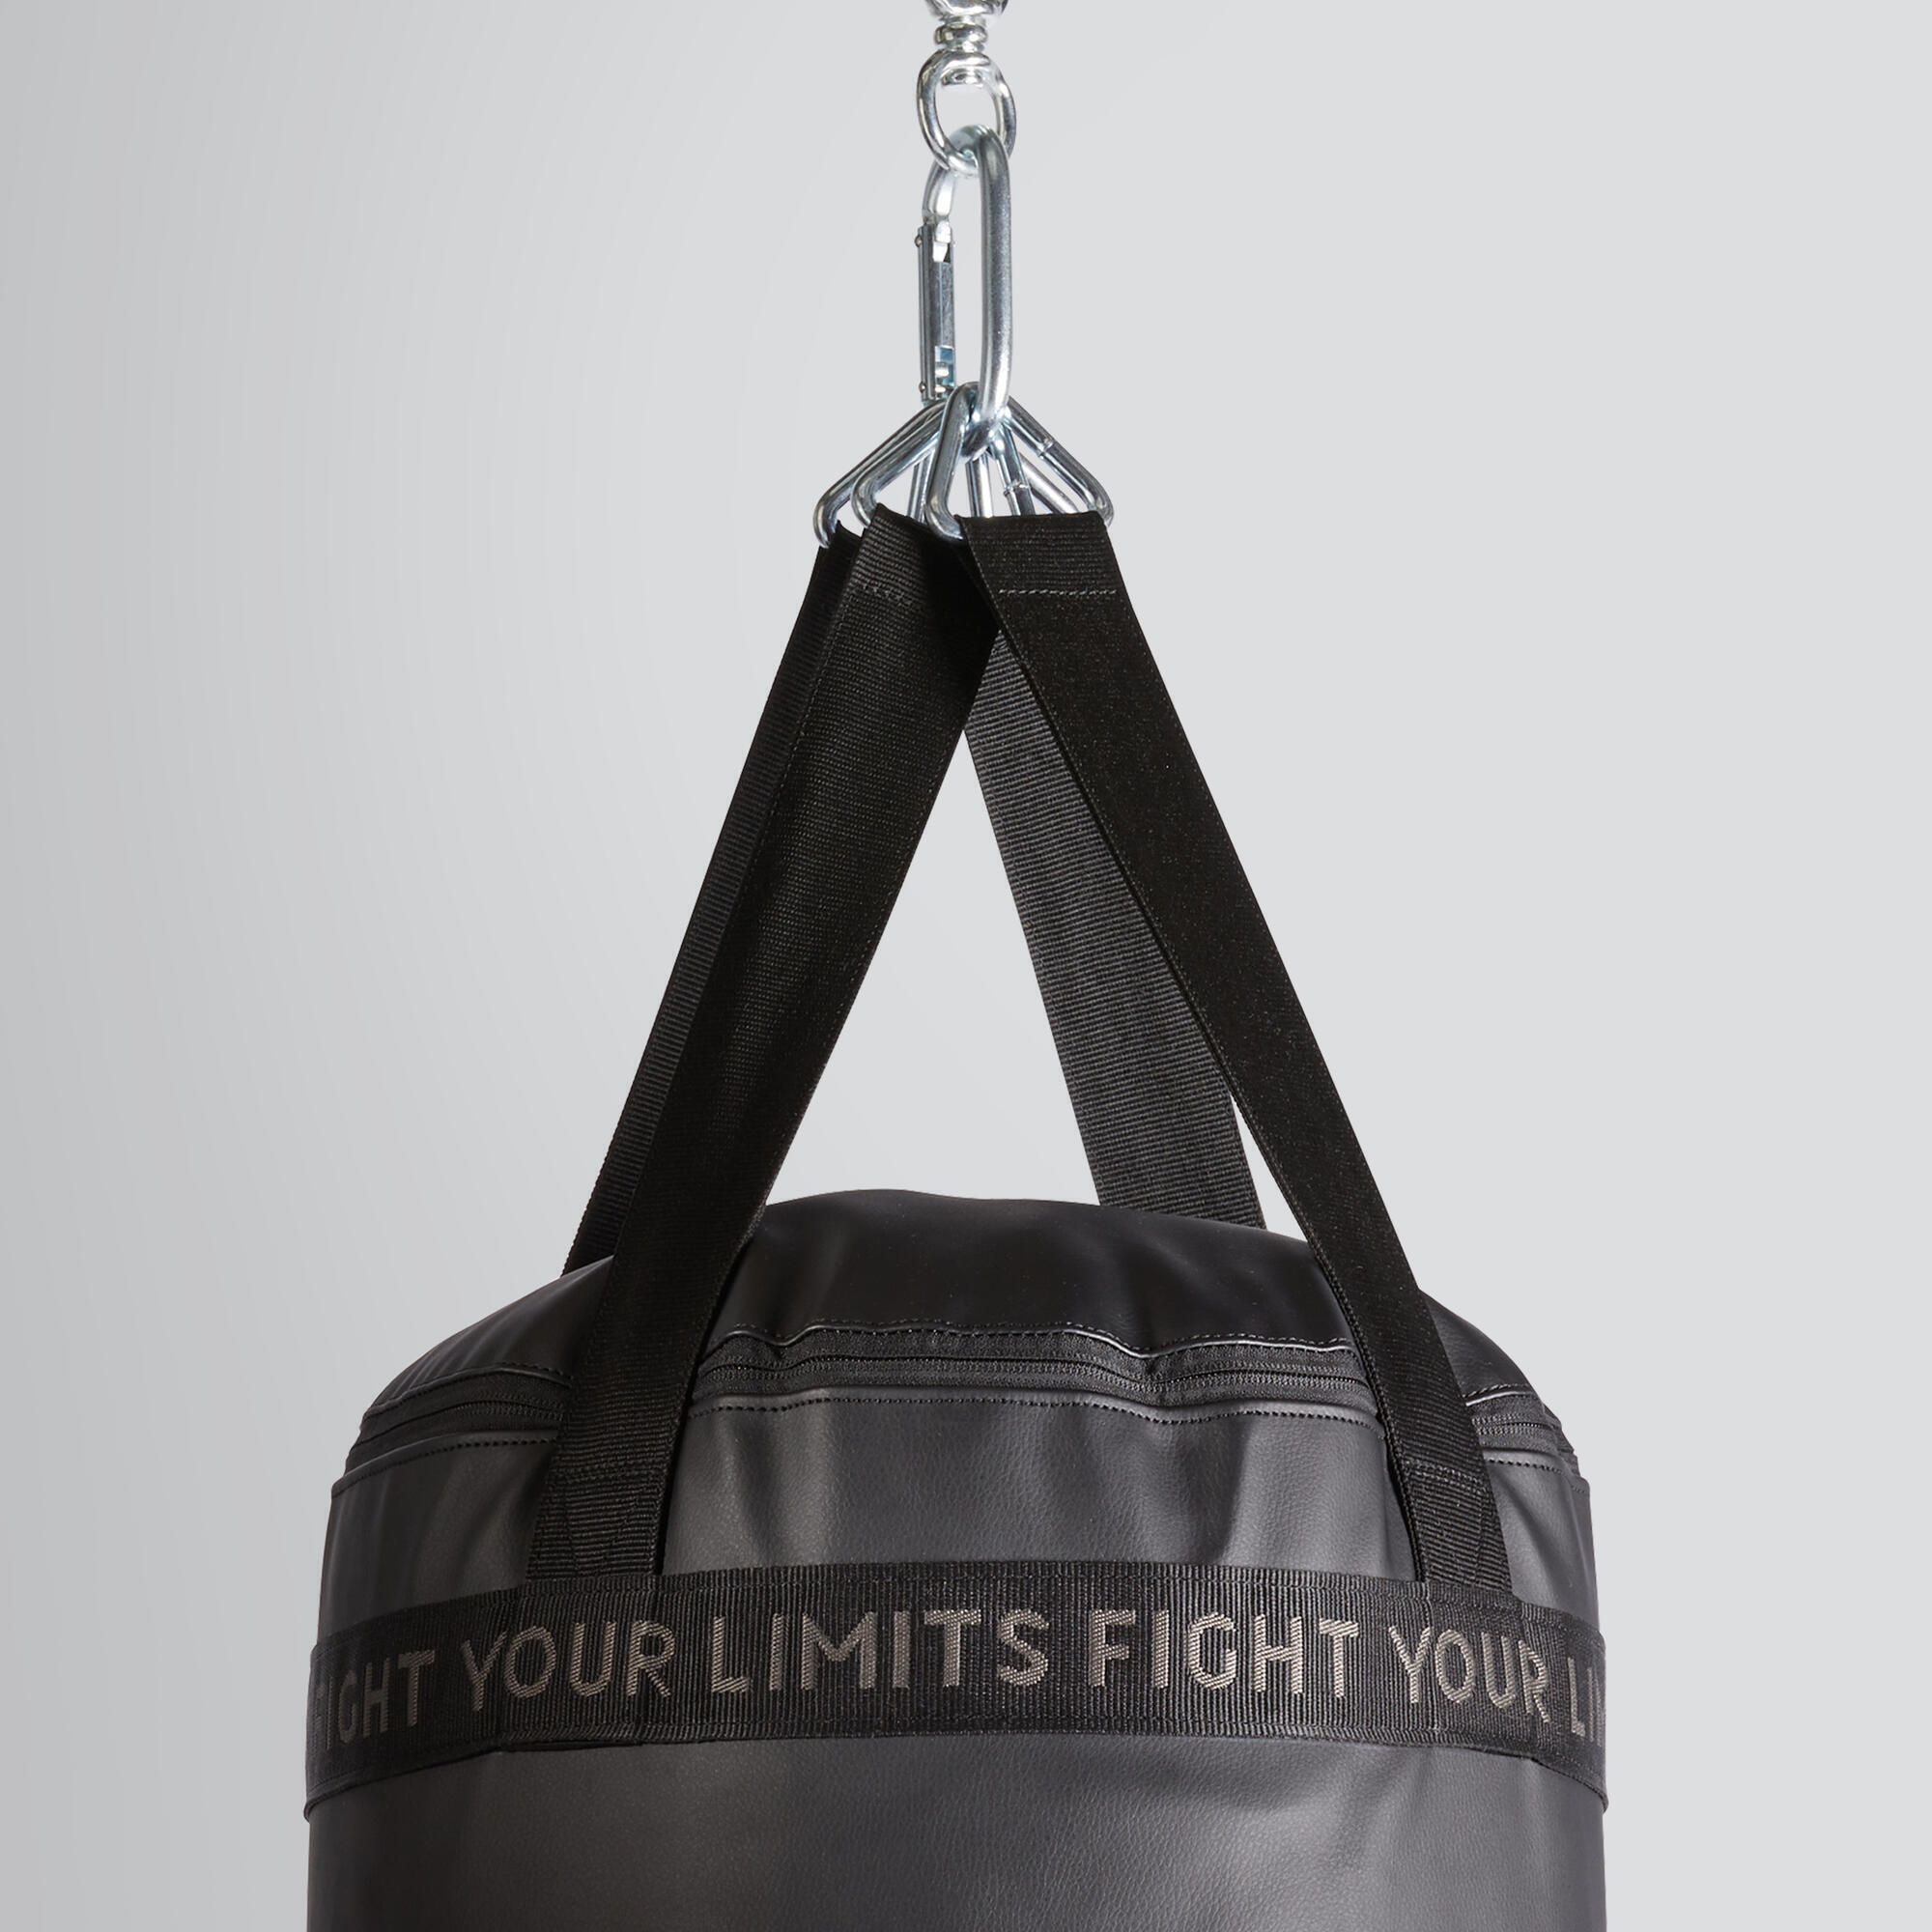 Adult Punching / Kickboxing Bag 50 kg 2/6